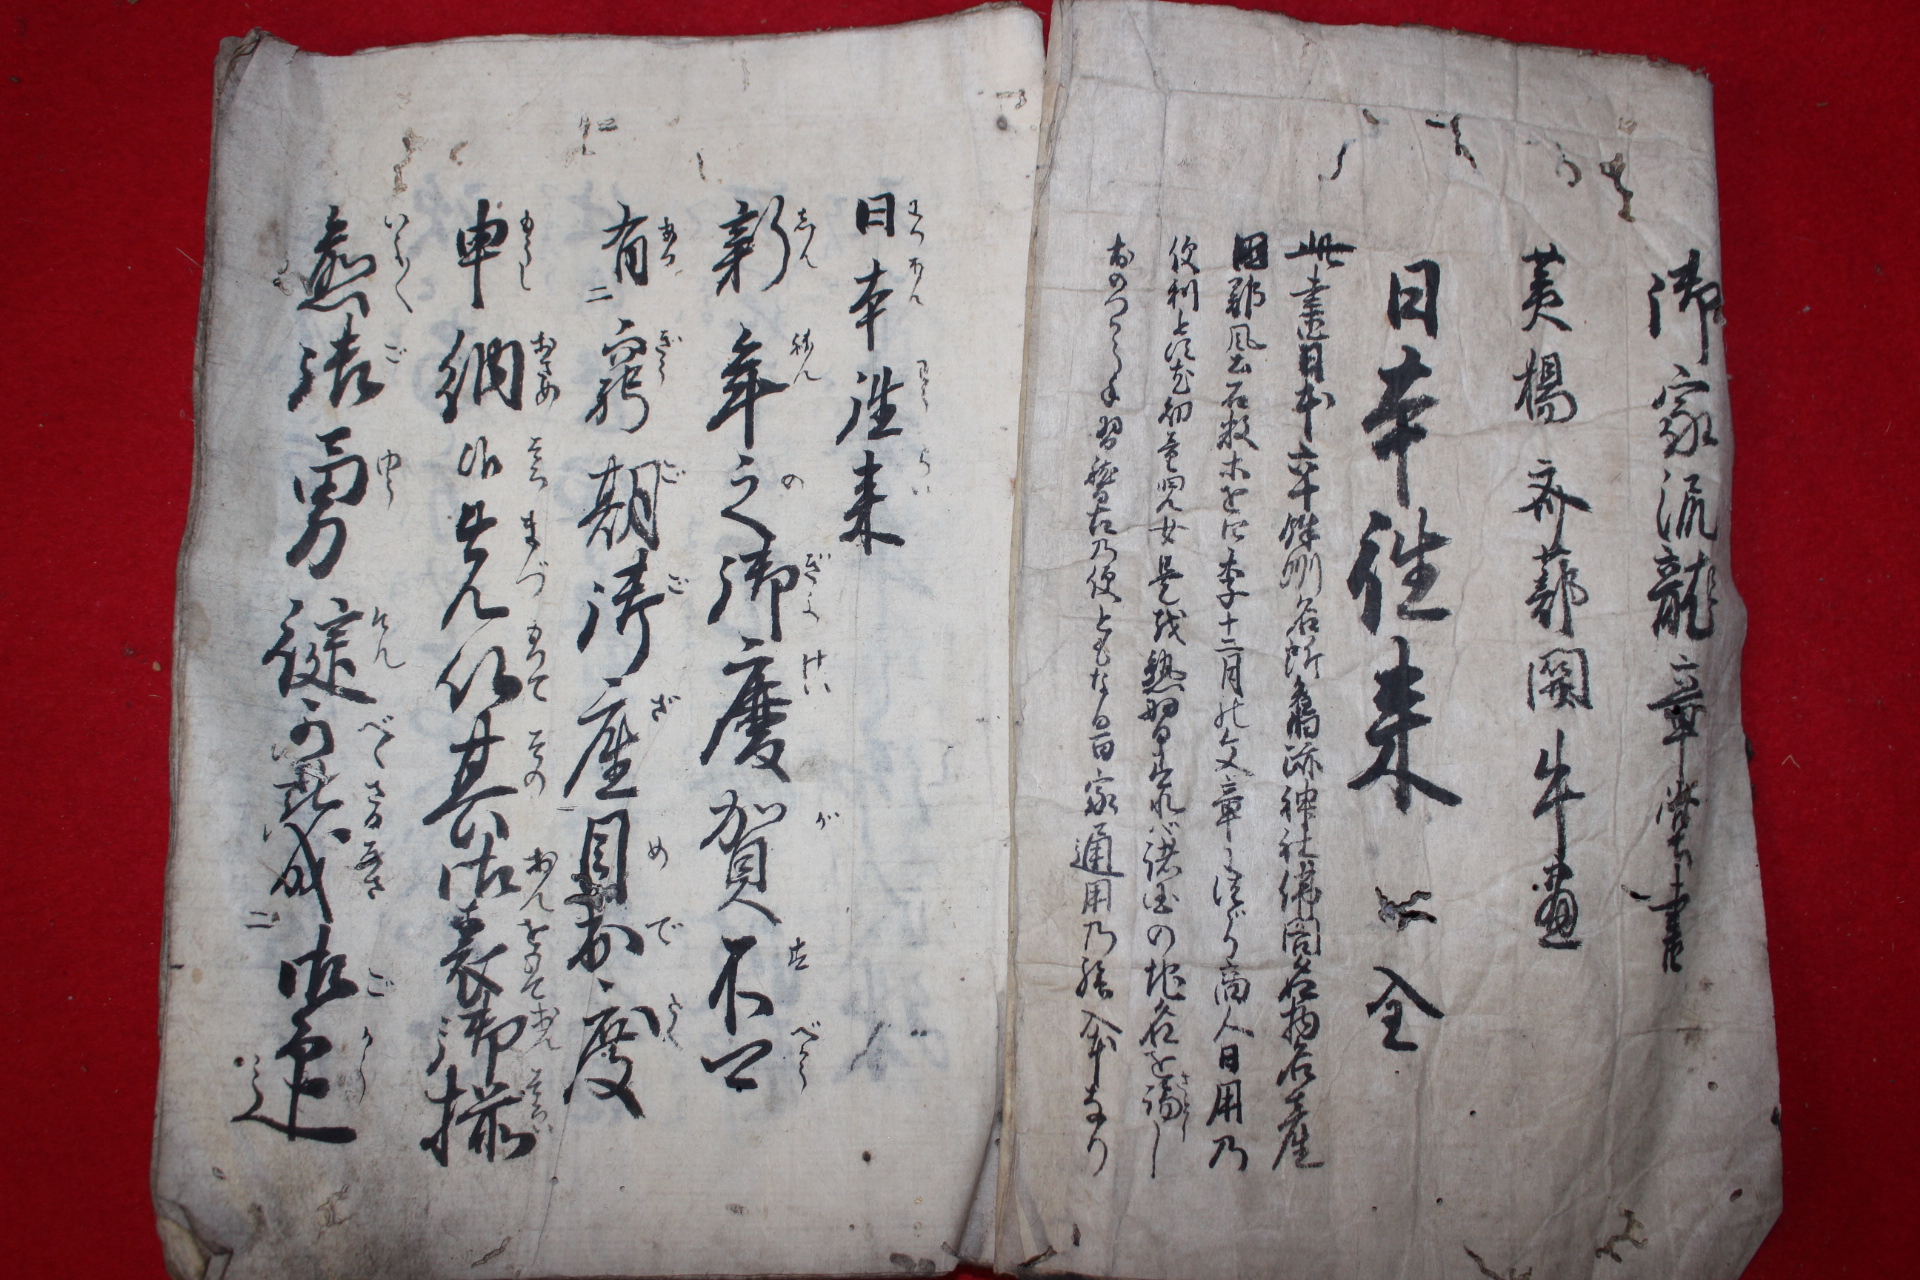 1851년(嘉永4年) 필사본 1책